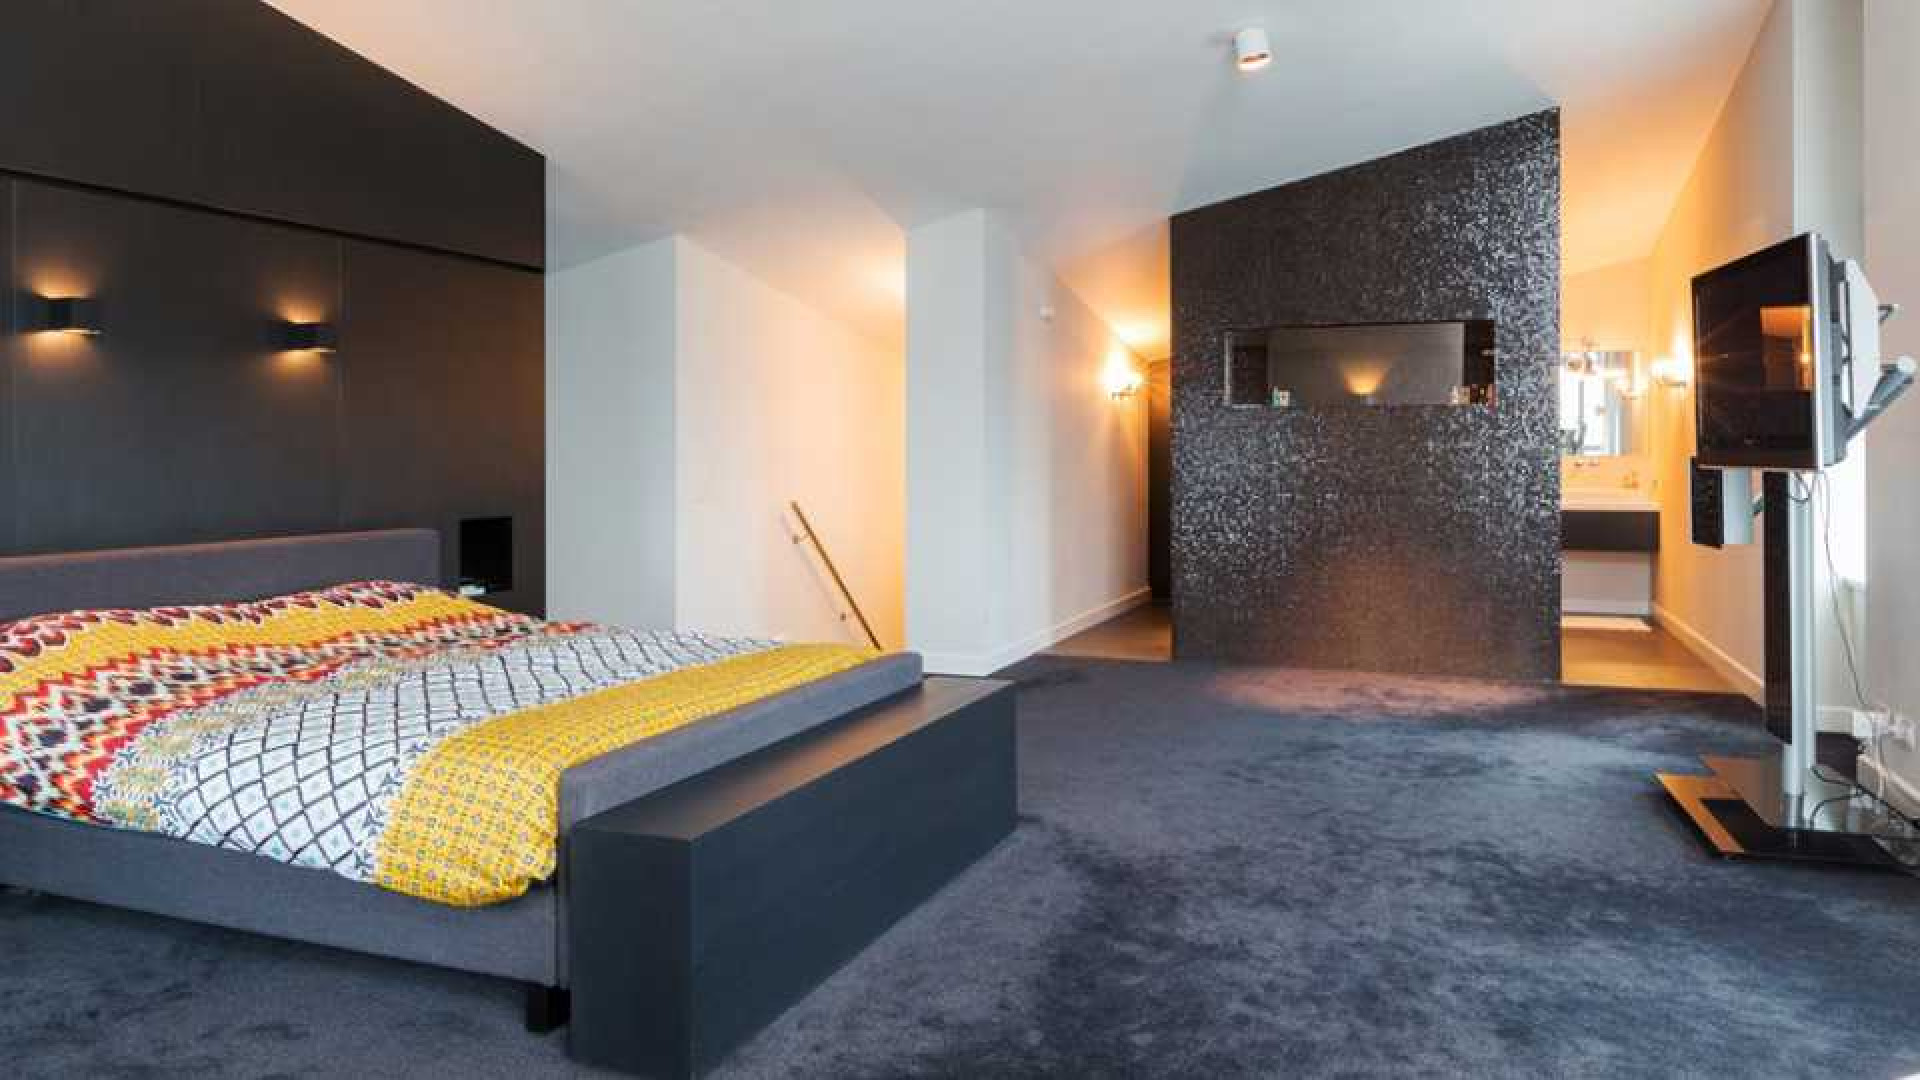 Amanda Krabbe en haar man Harrie Kolen zetten hun luxe penthouse in stille verkoop. Zie foto's